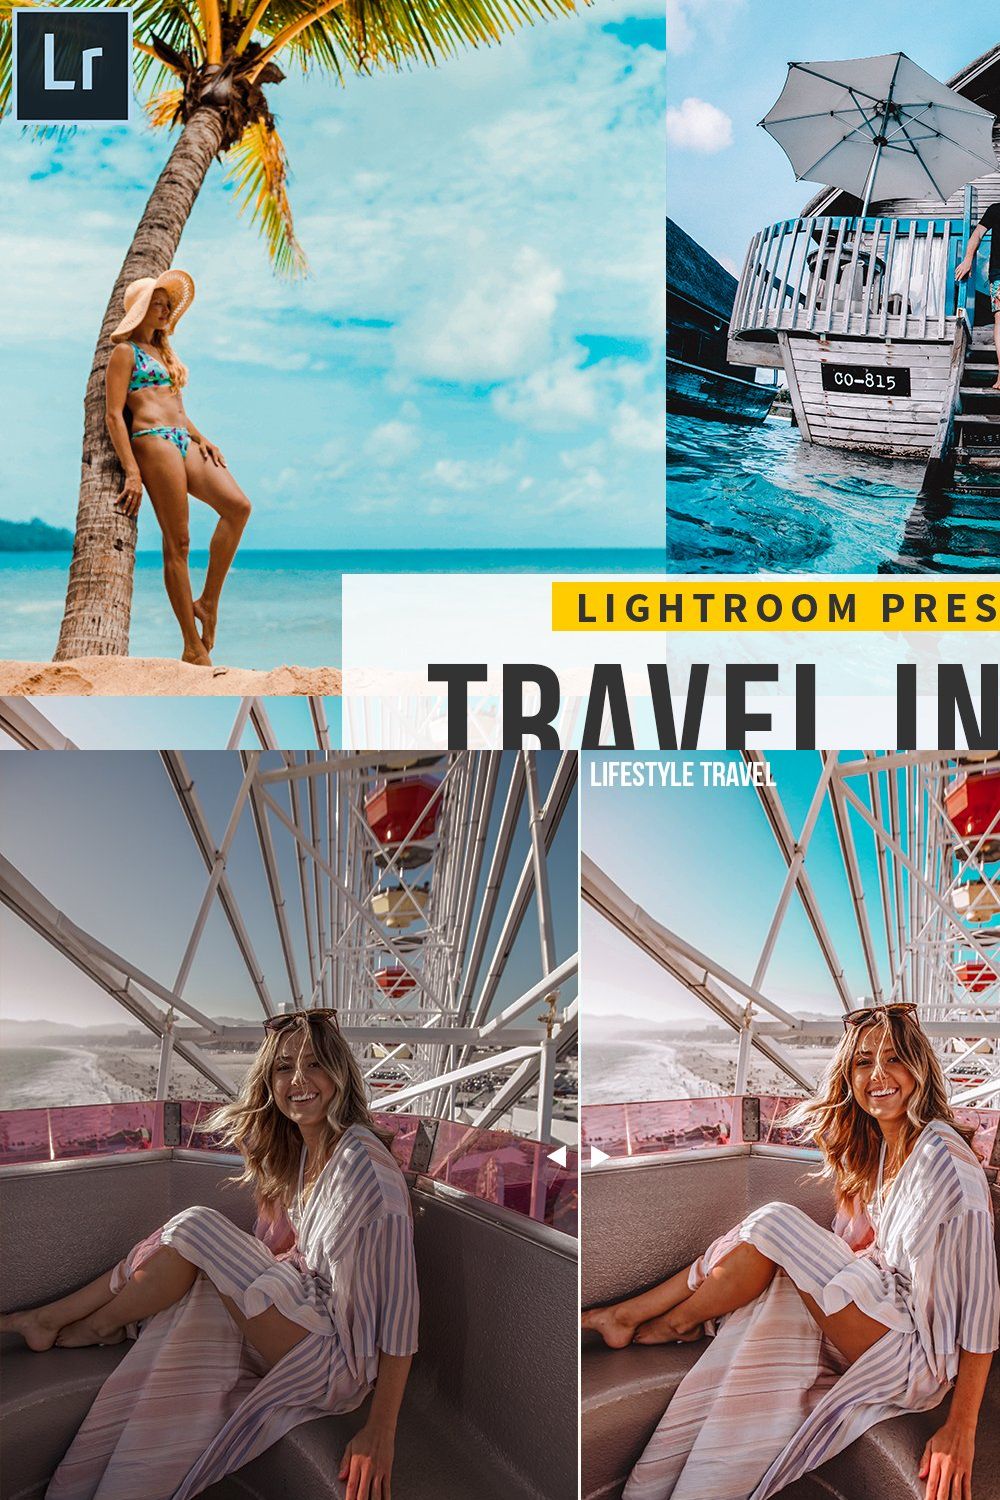 Travel Influencer Lightroom Presets pinterest preview image.